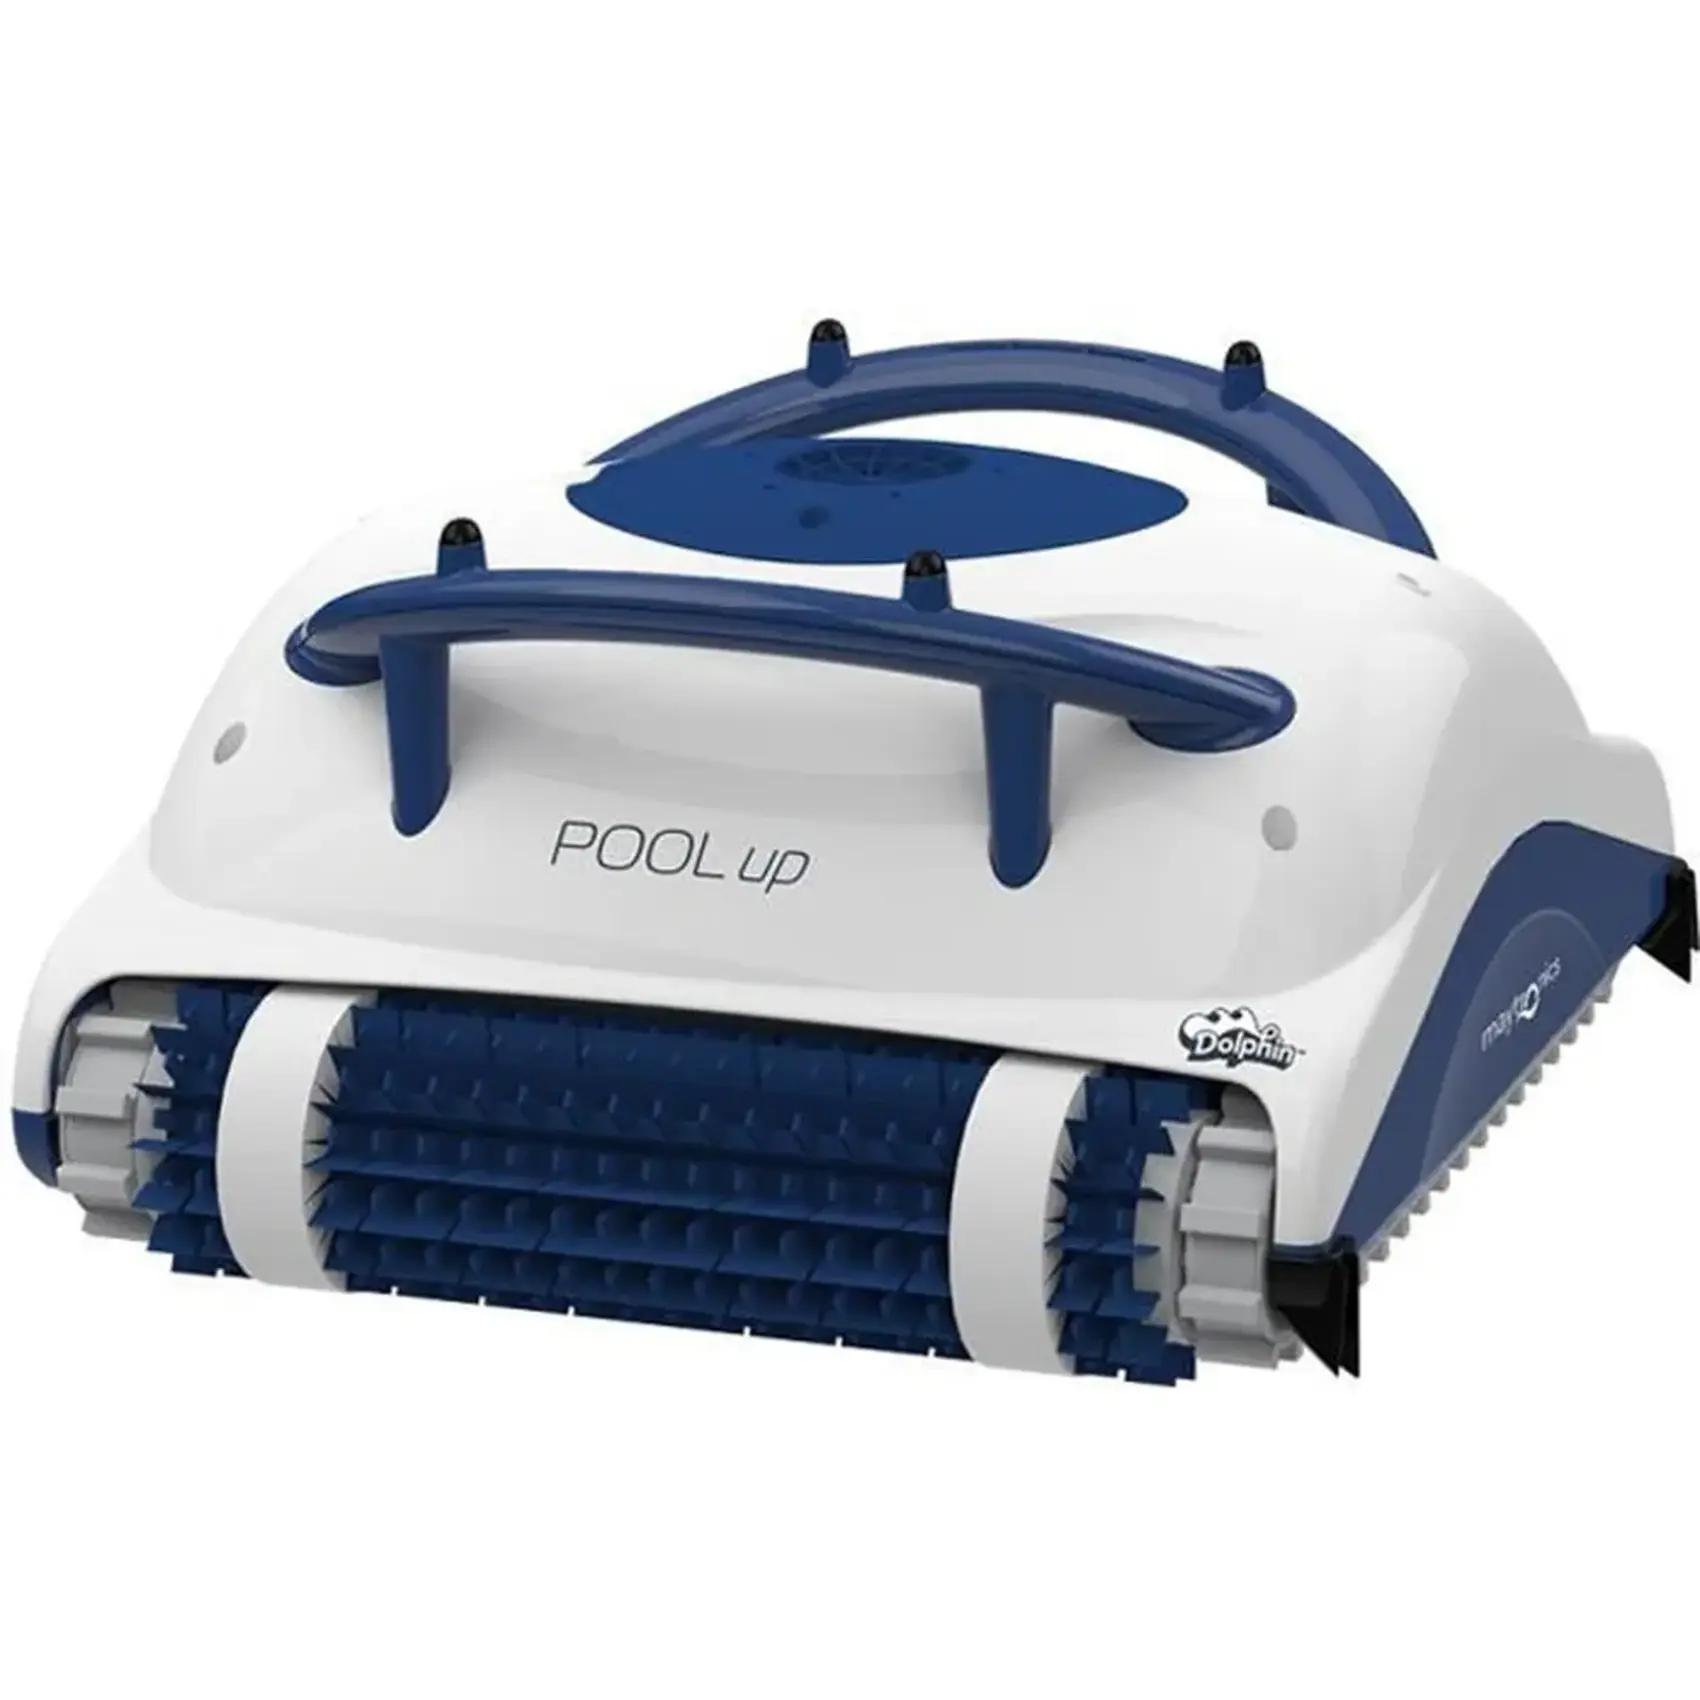 Profitez d'une offre exceptionnelle sur le robot de piscine électrique DOLPHIN POOL UP © Cdiscount